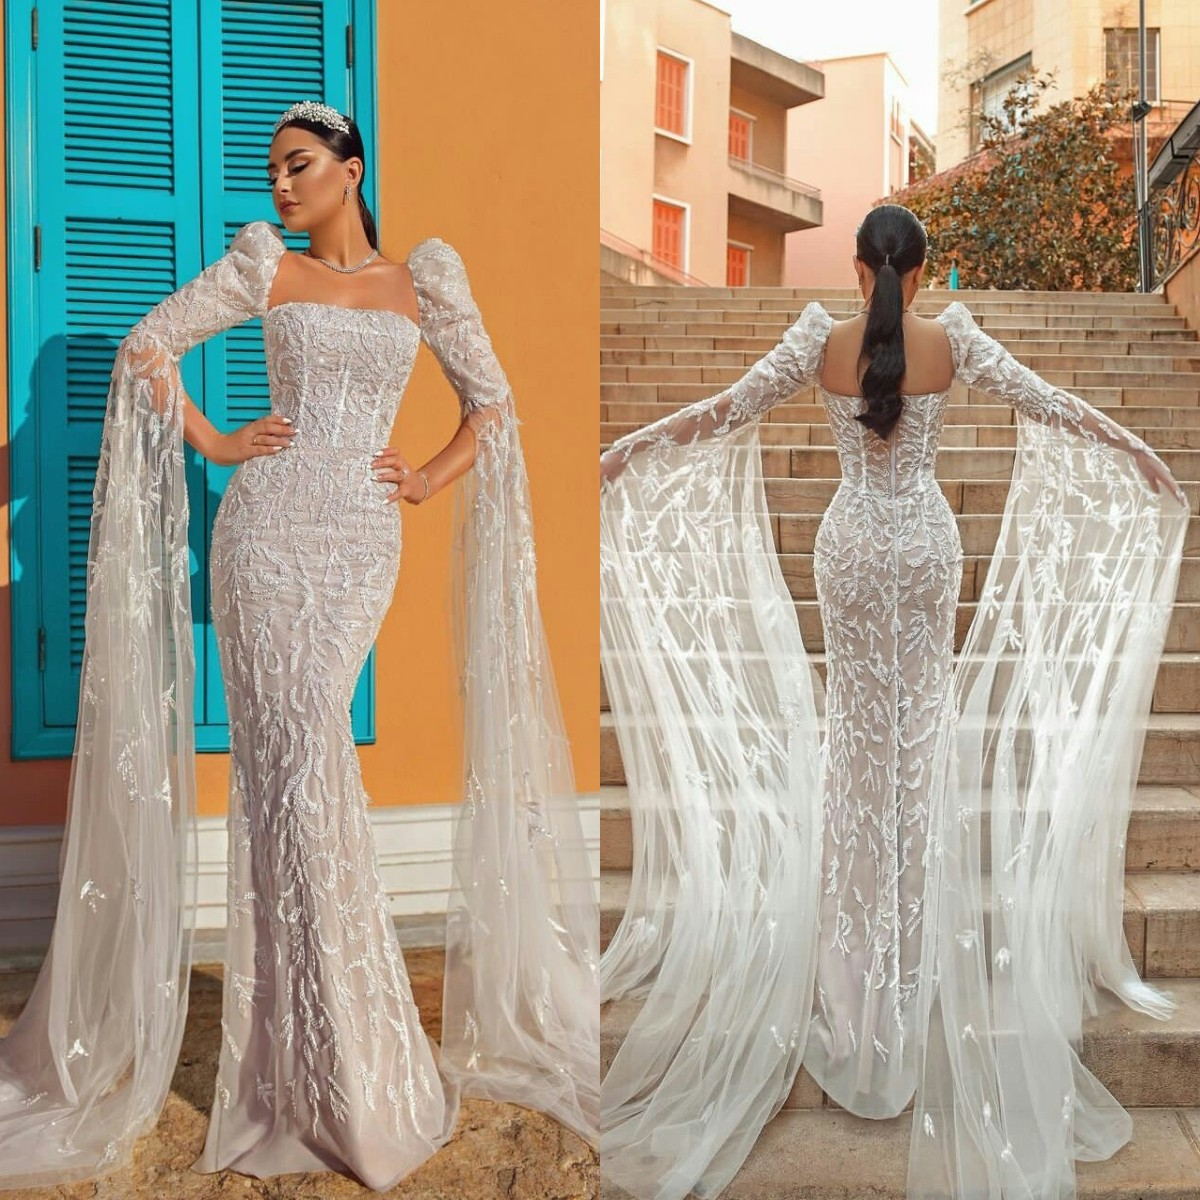 Fashion Mermaid Wedding Dress Fashion Mermaid Wedding Dress Fashion Mermaid Wedding Dress Fashion Mermaid Wedding Dress 